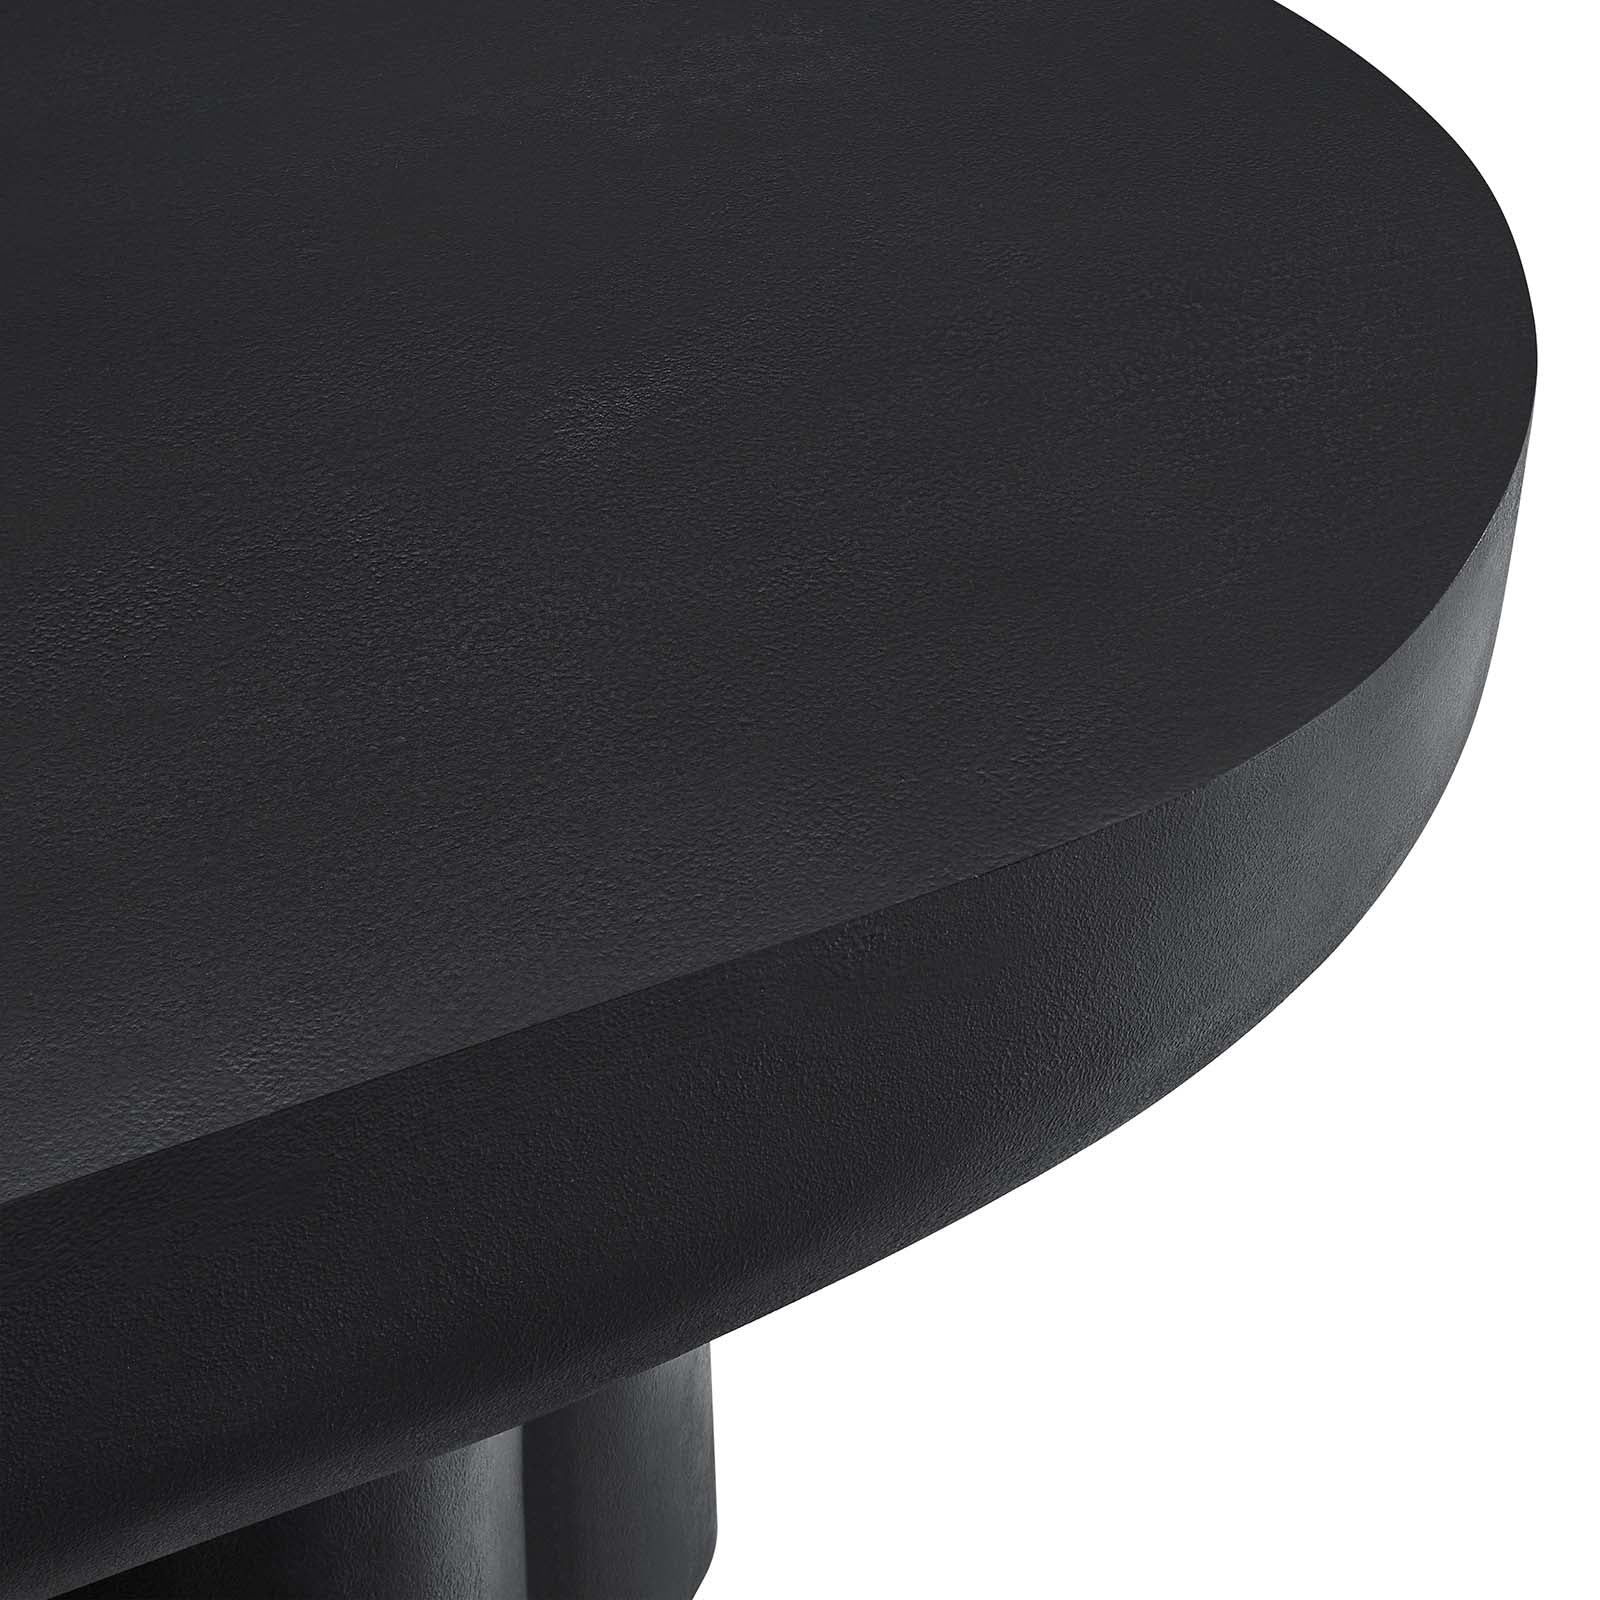 Casper Oval Concrete Coffee Table - Black